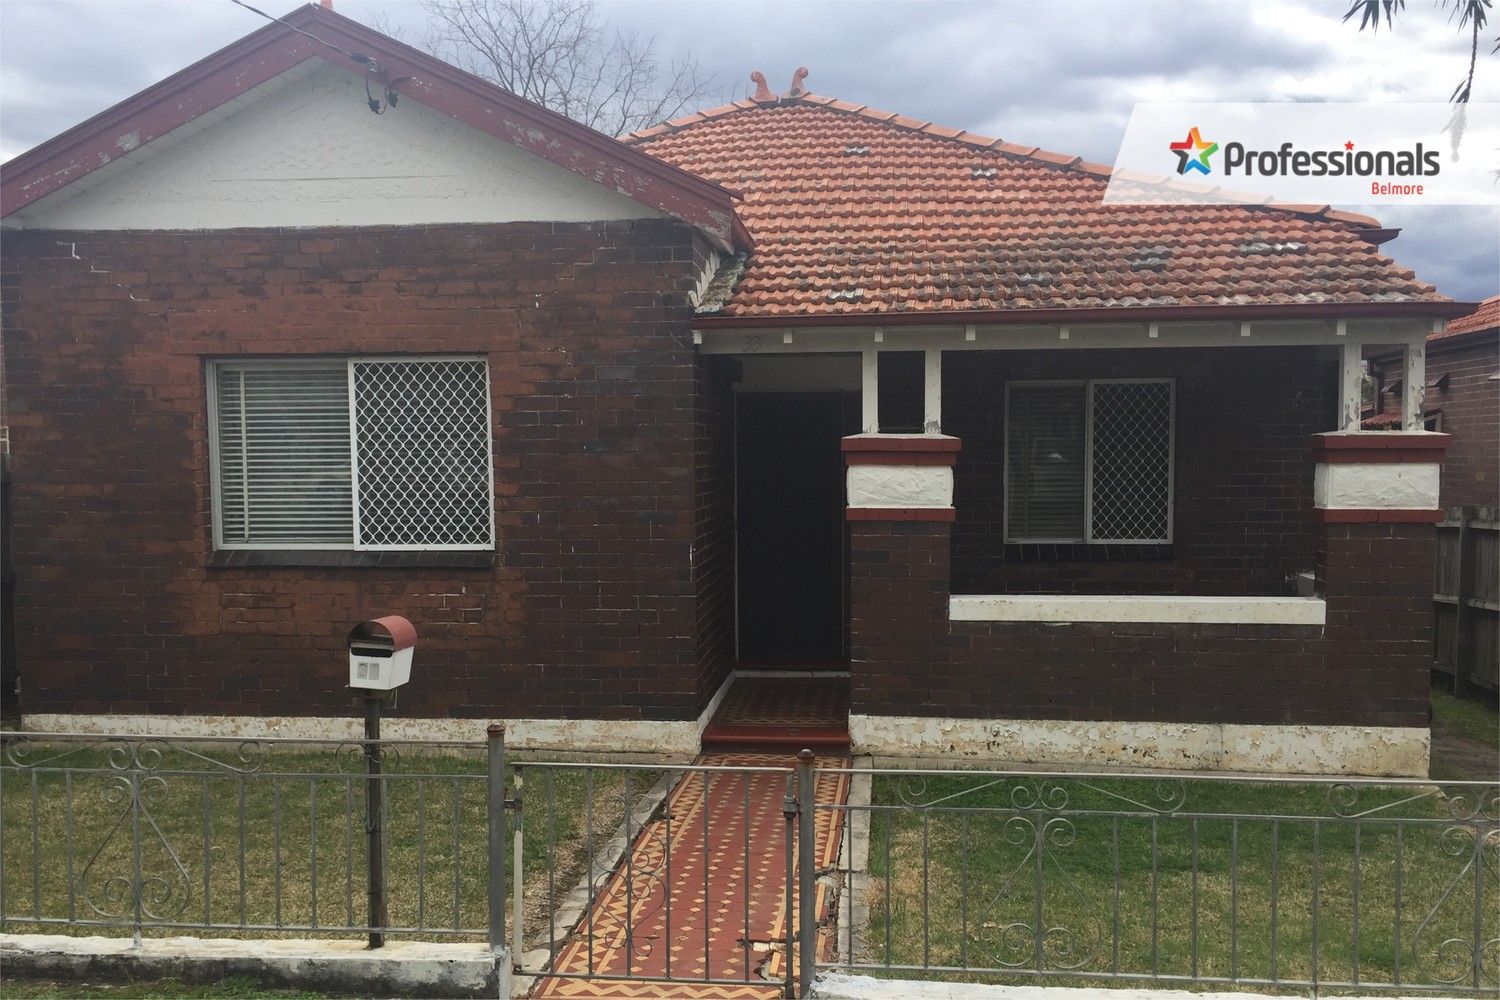 2 bedrooms House in 33 Yangoora Road BELMORE NSW, 2192